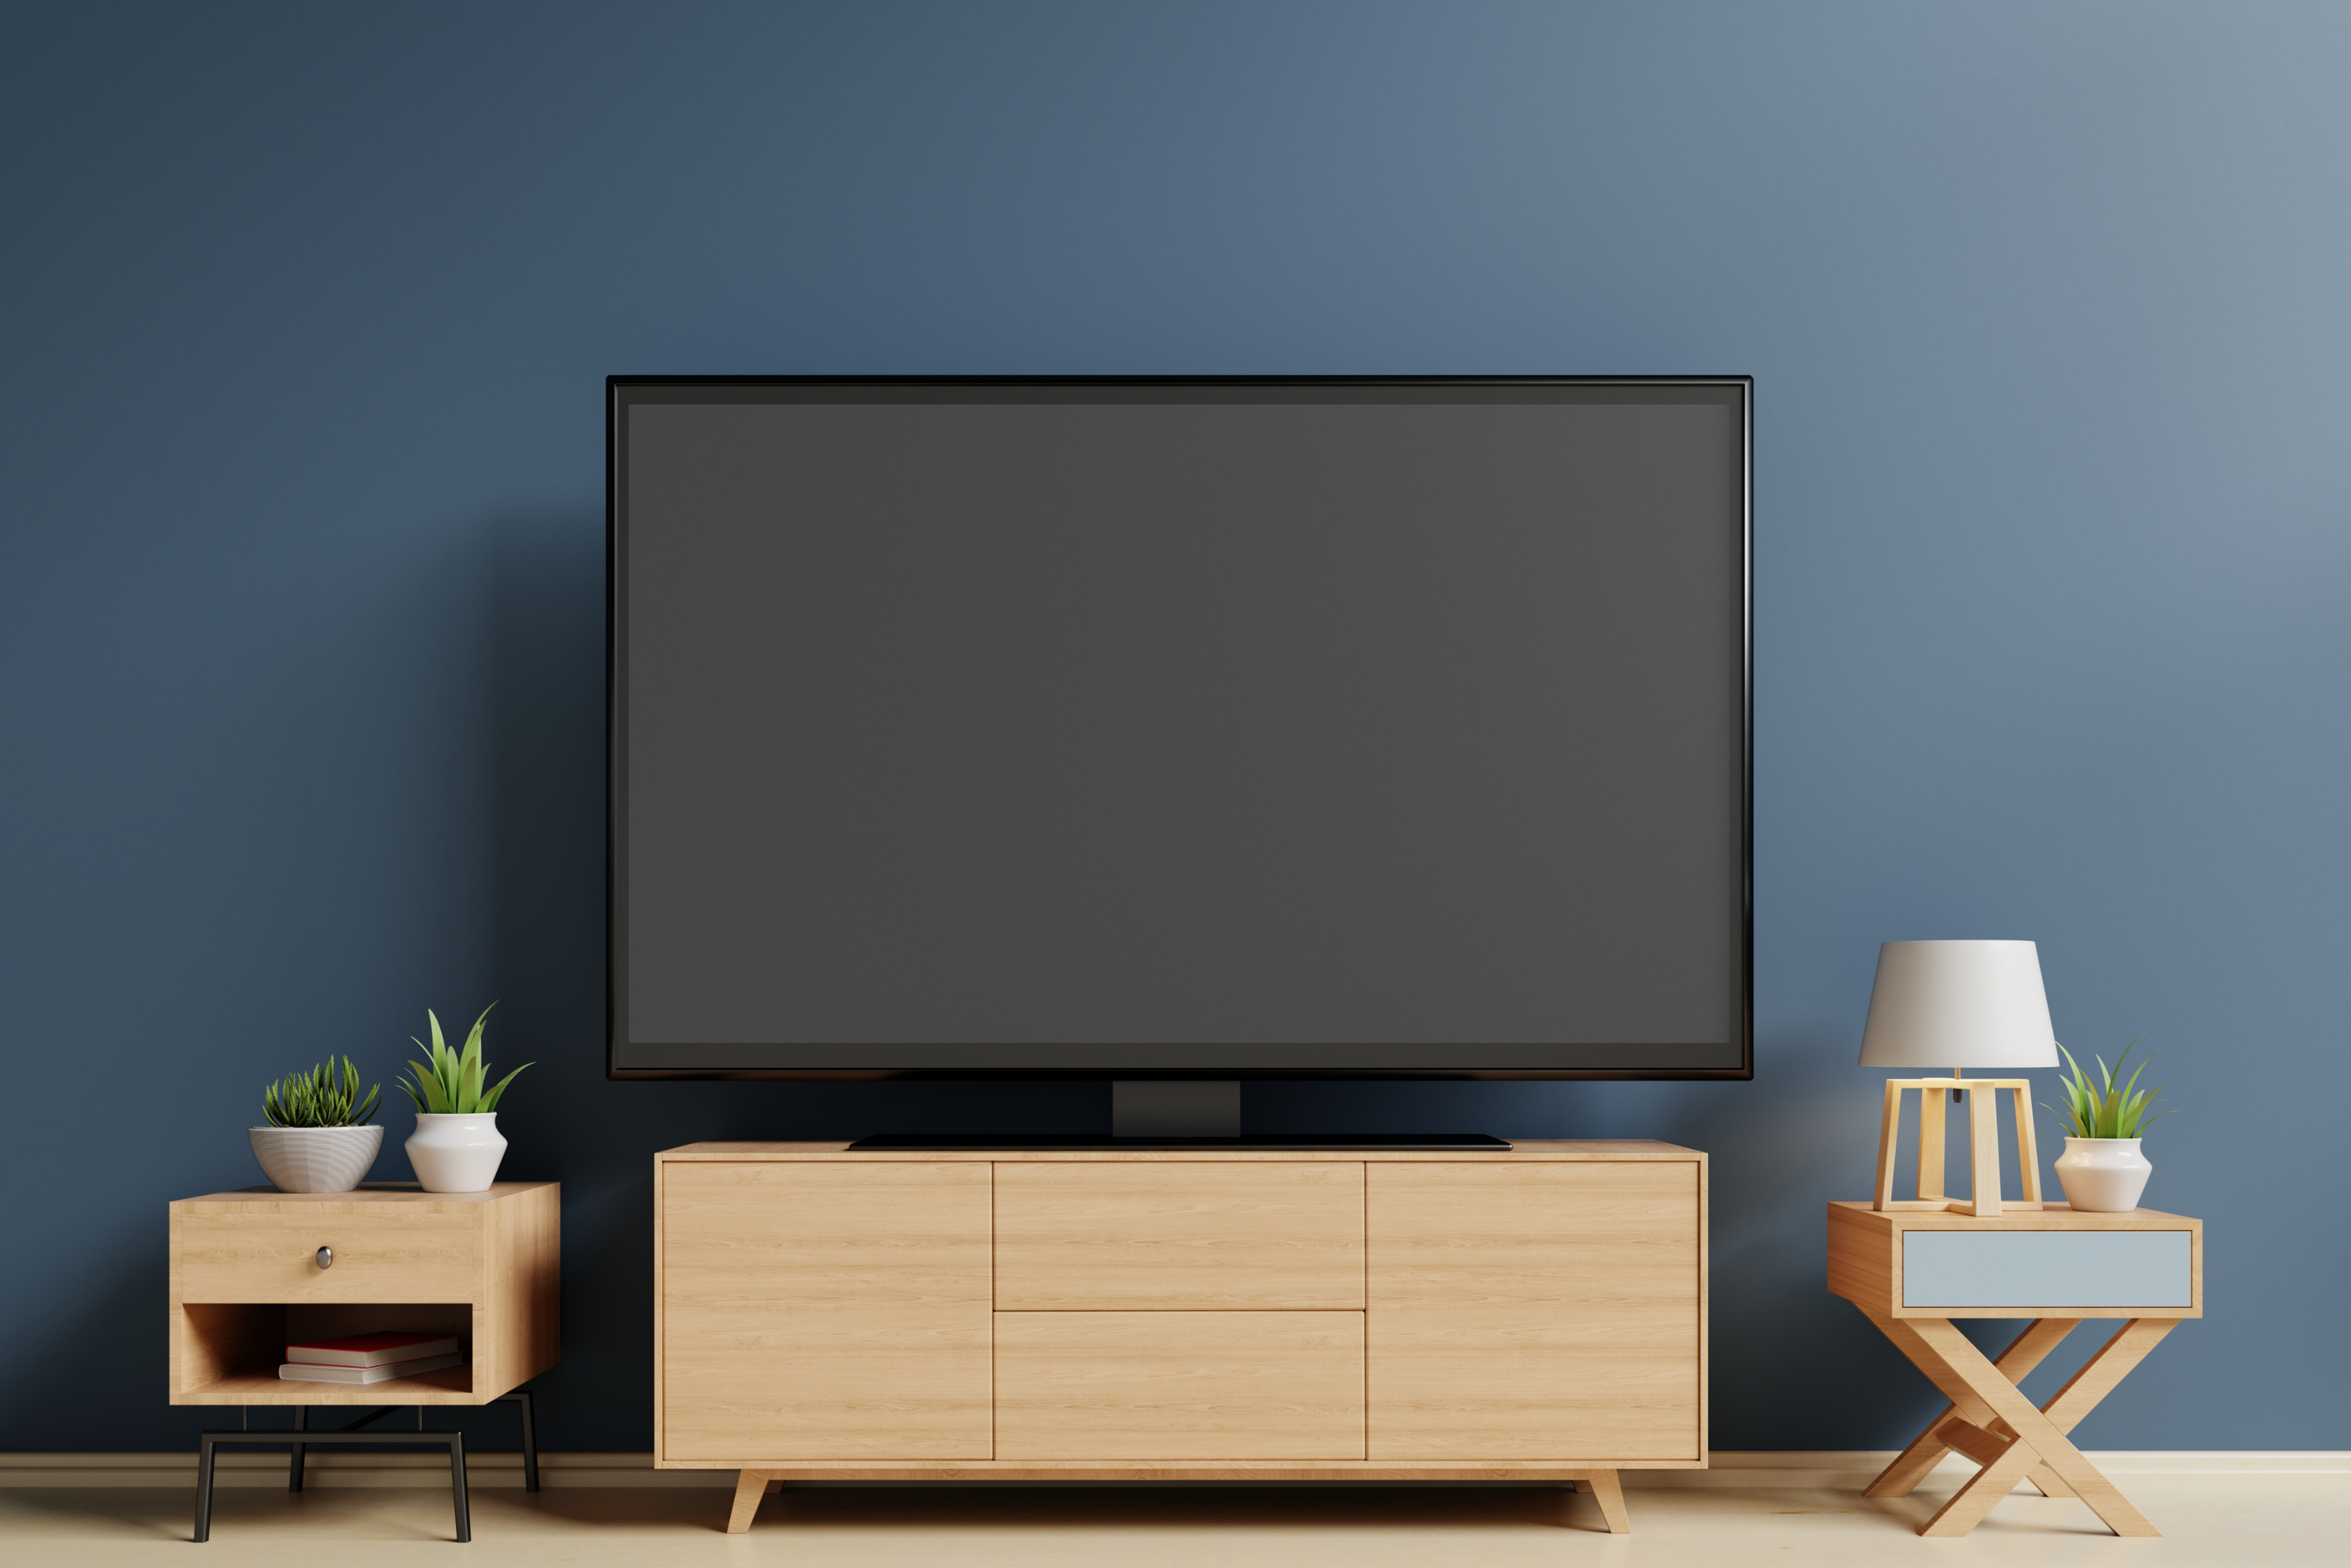 Co to jest Smart TV? Poznaj nowoczesny telewizor na miarę Twoich potrzeb